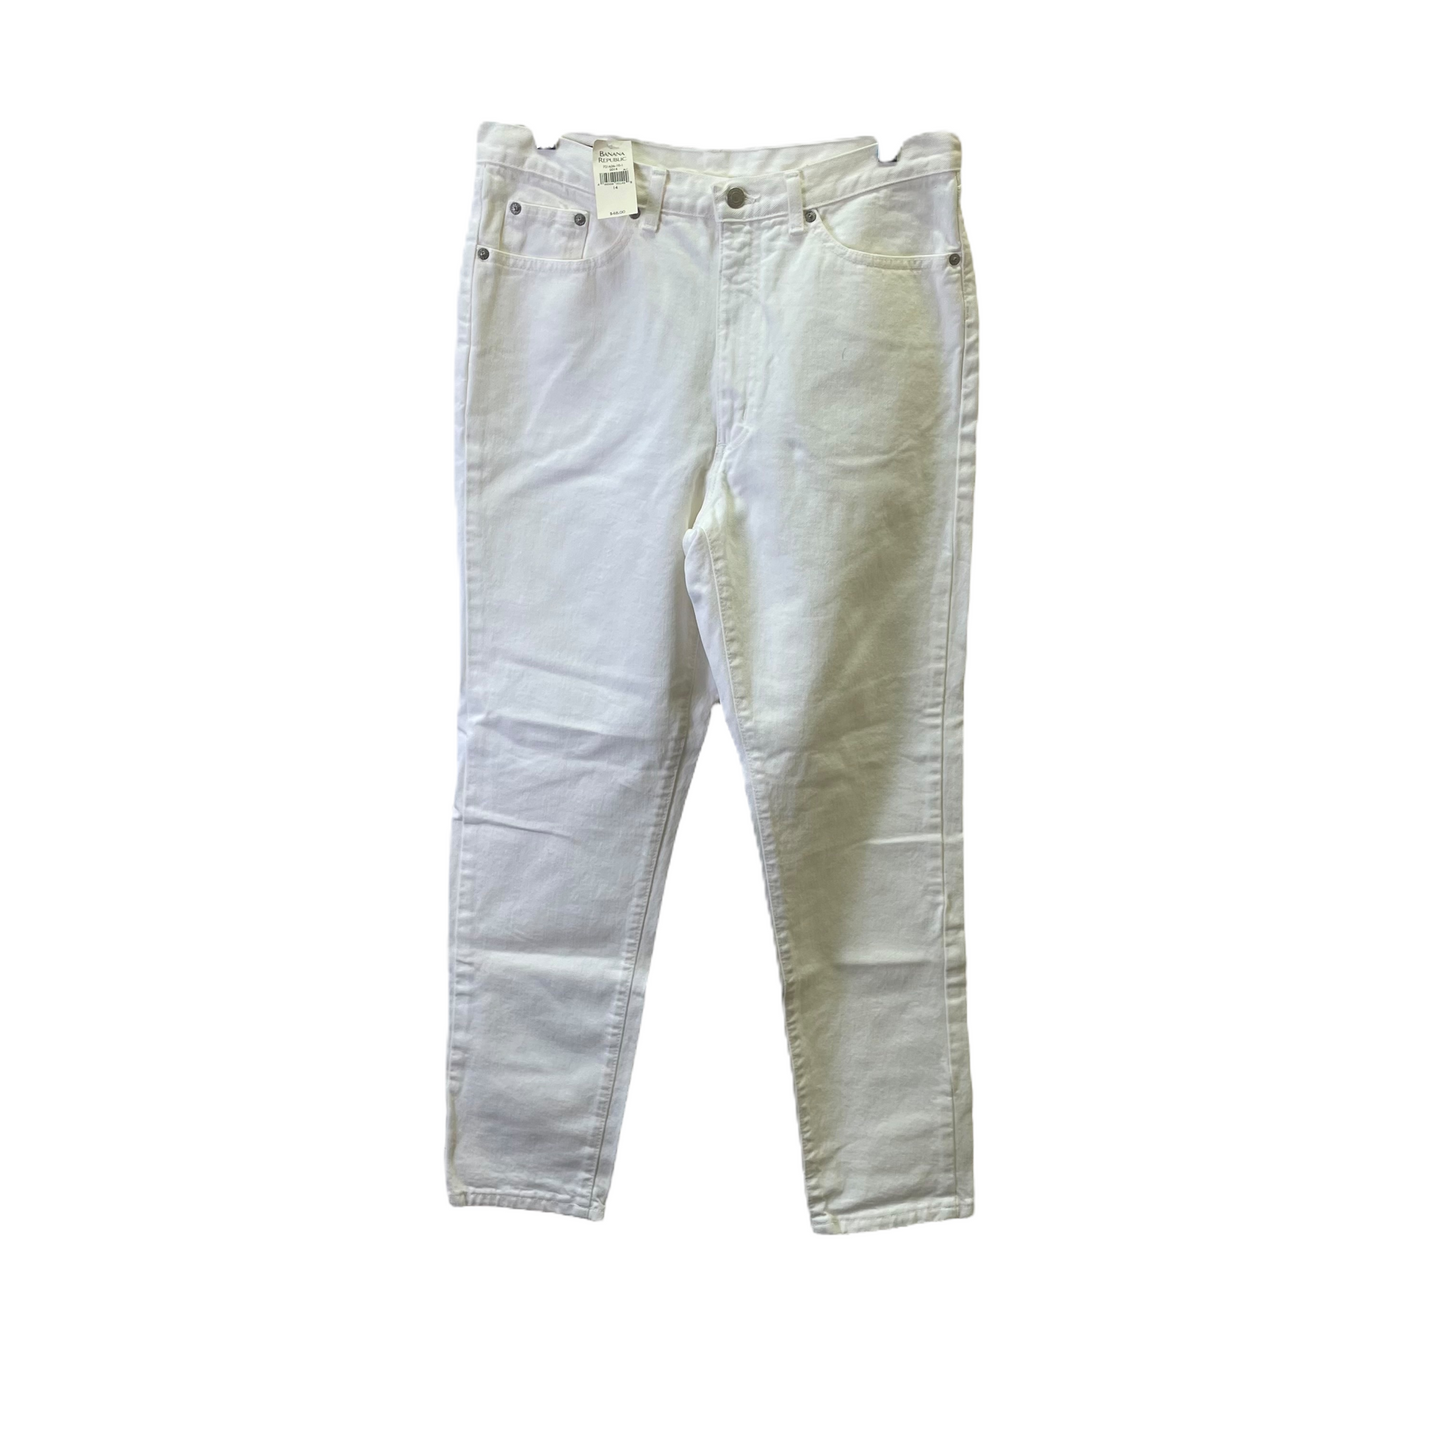 White Pants Cropped By Banana Republic, Size: 14